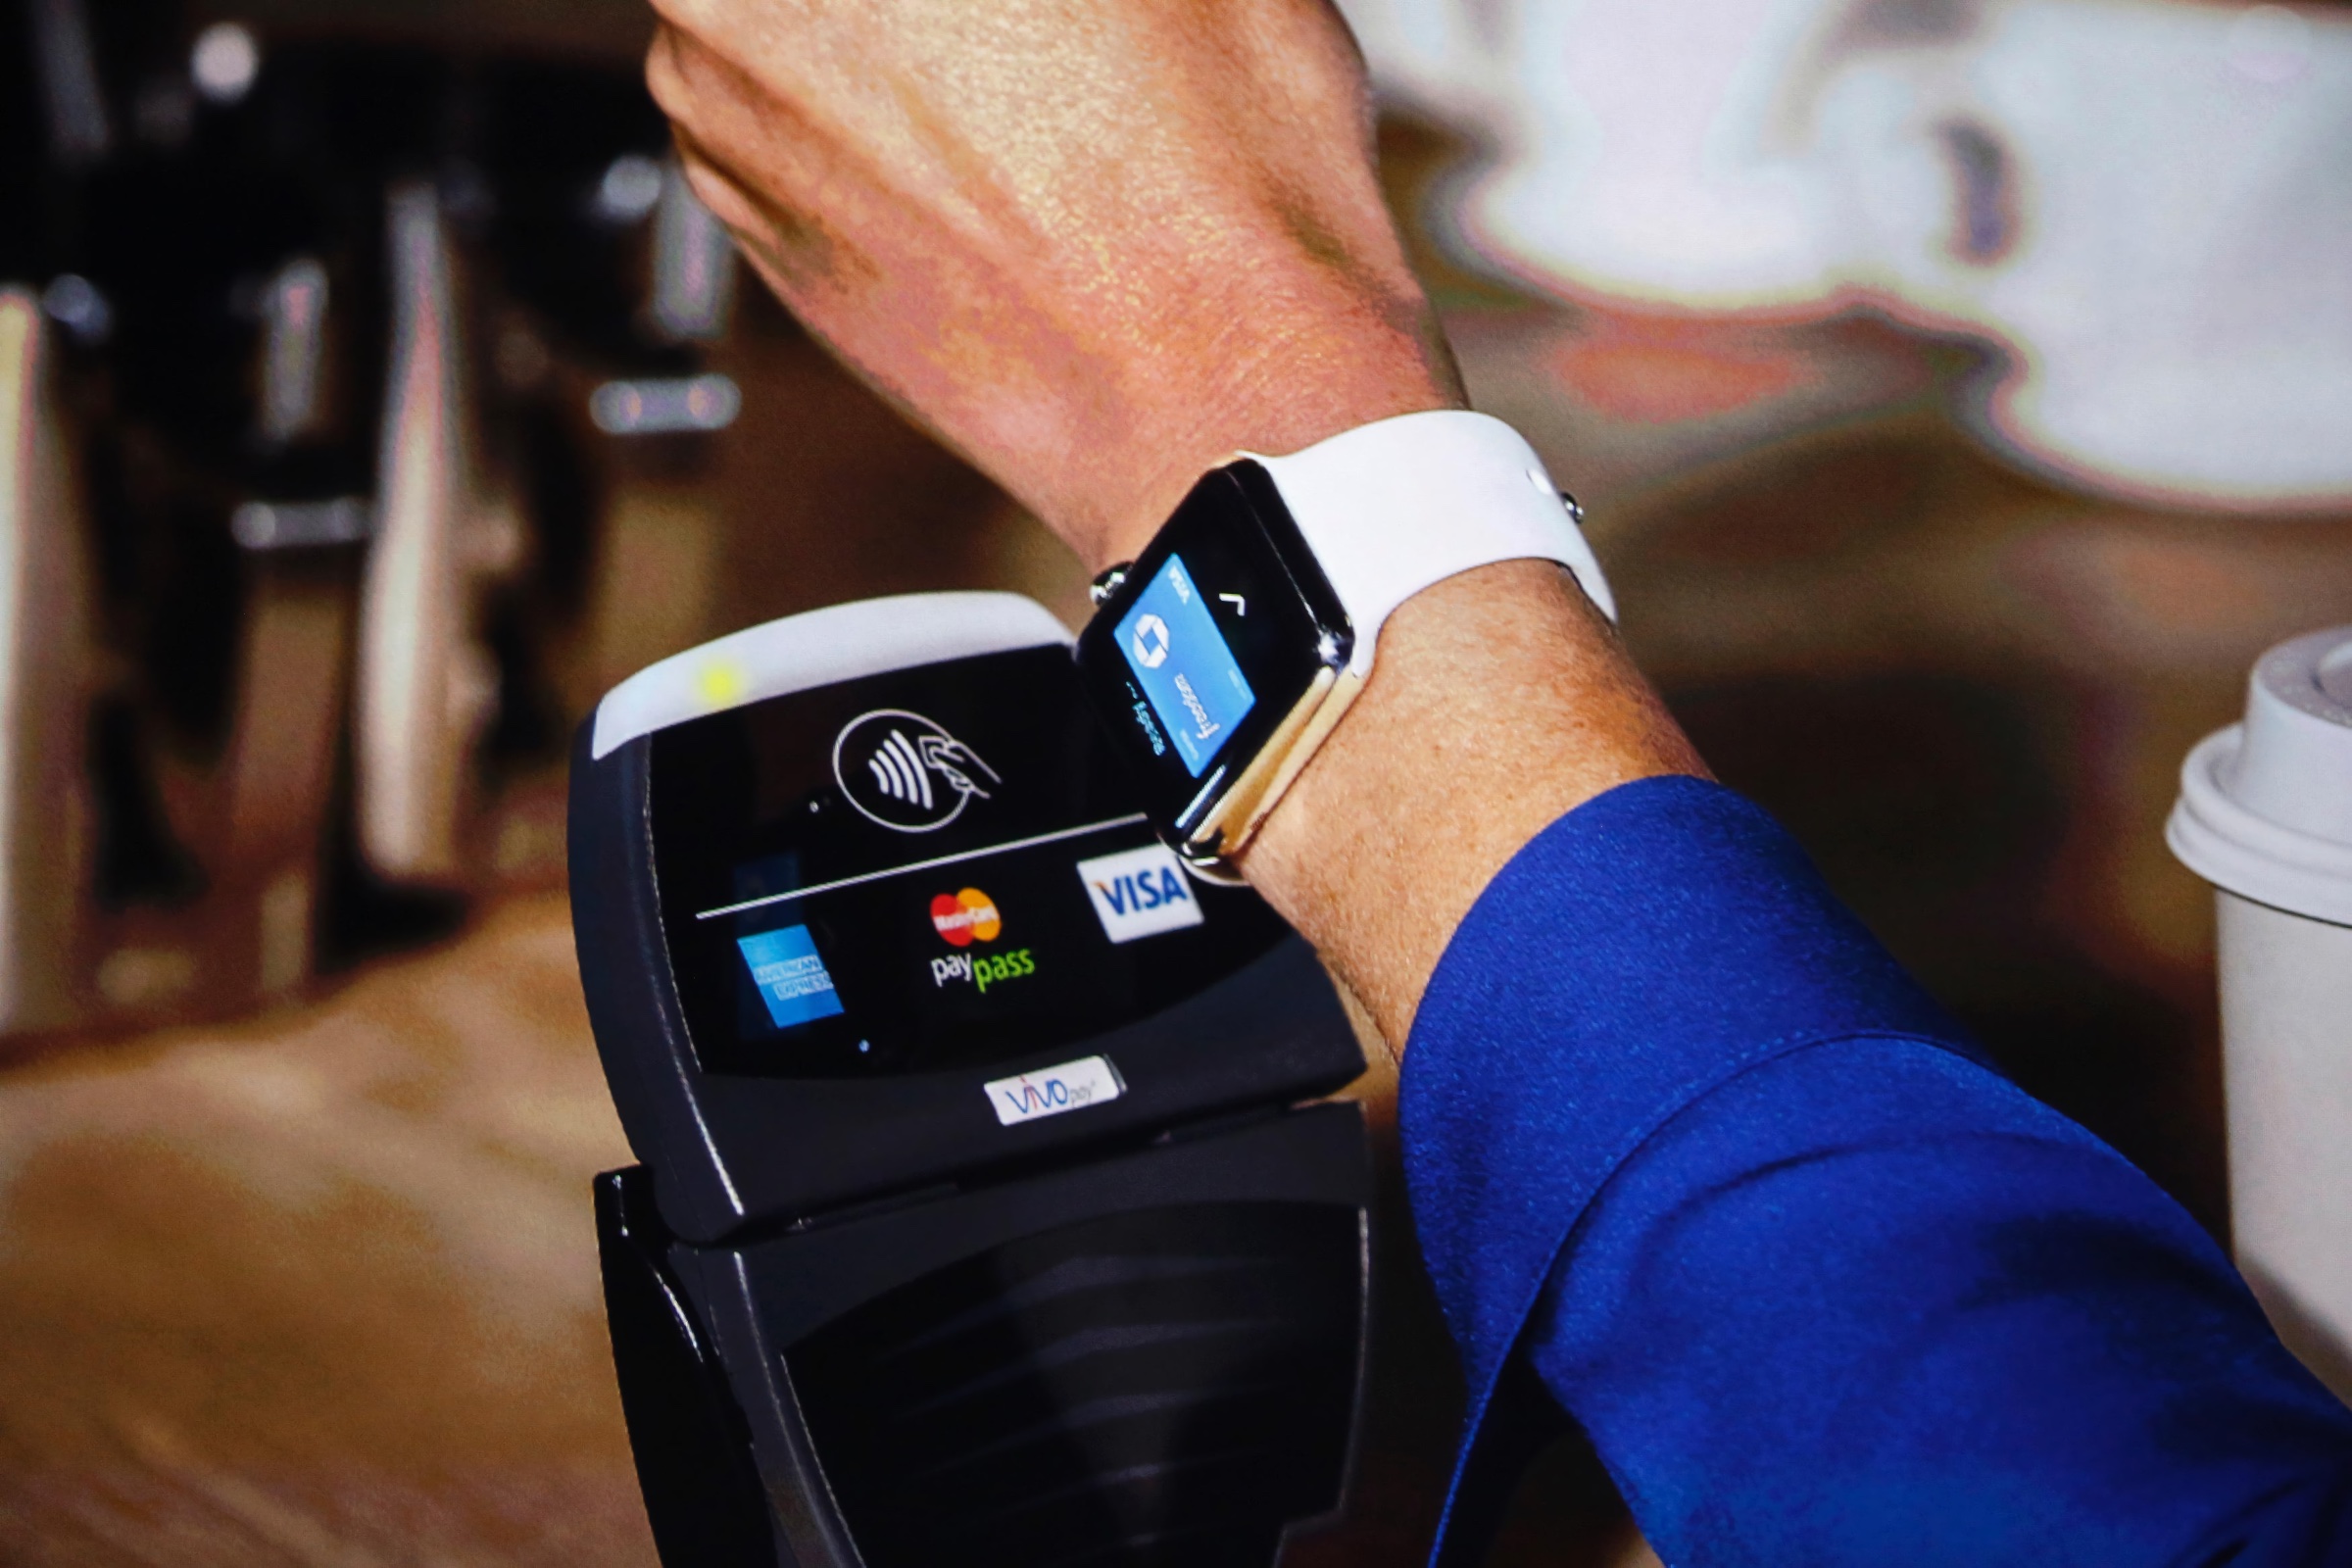 Relojes inteligentes con chip NFC para pagar en tiendas que puedes ya | Computer Hoy